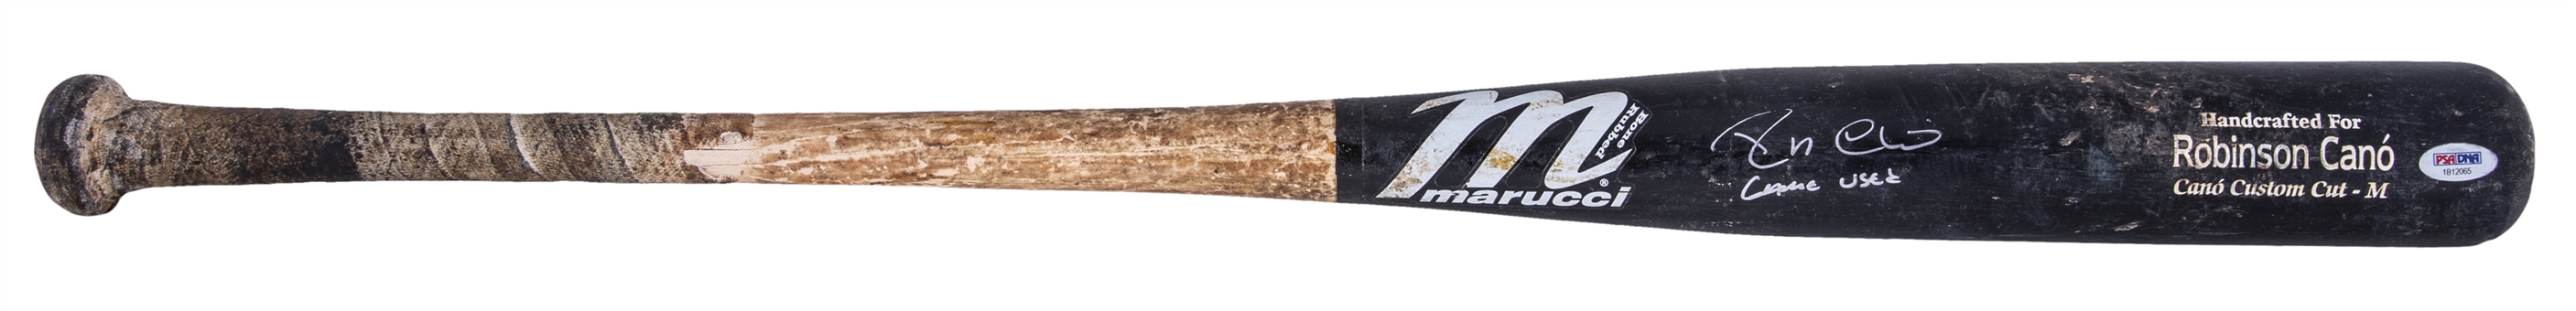 2011 Robinson Cano Game Used & Signed Marucci Cano CC Model Bat (PSA/DNA GU 9.5)